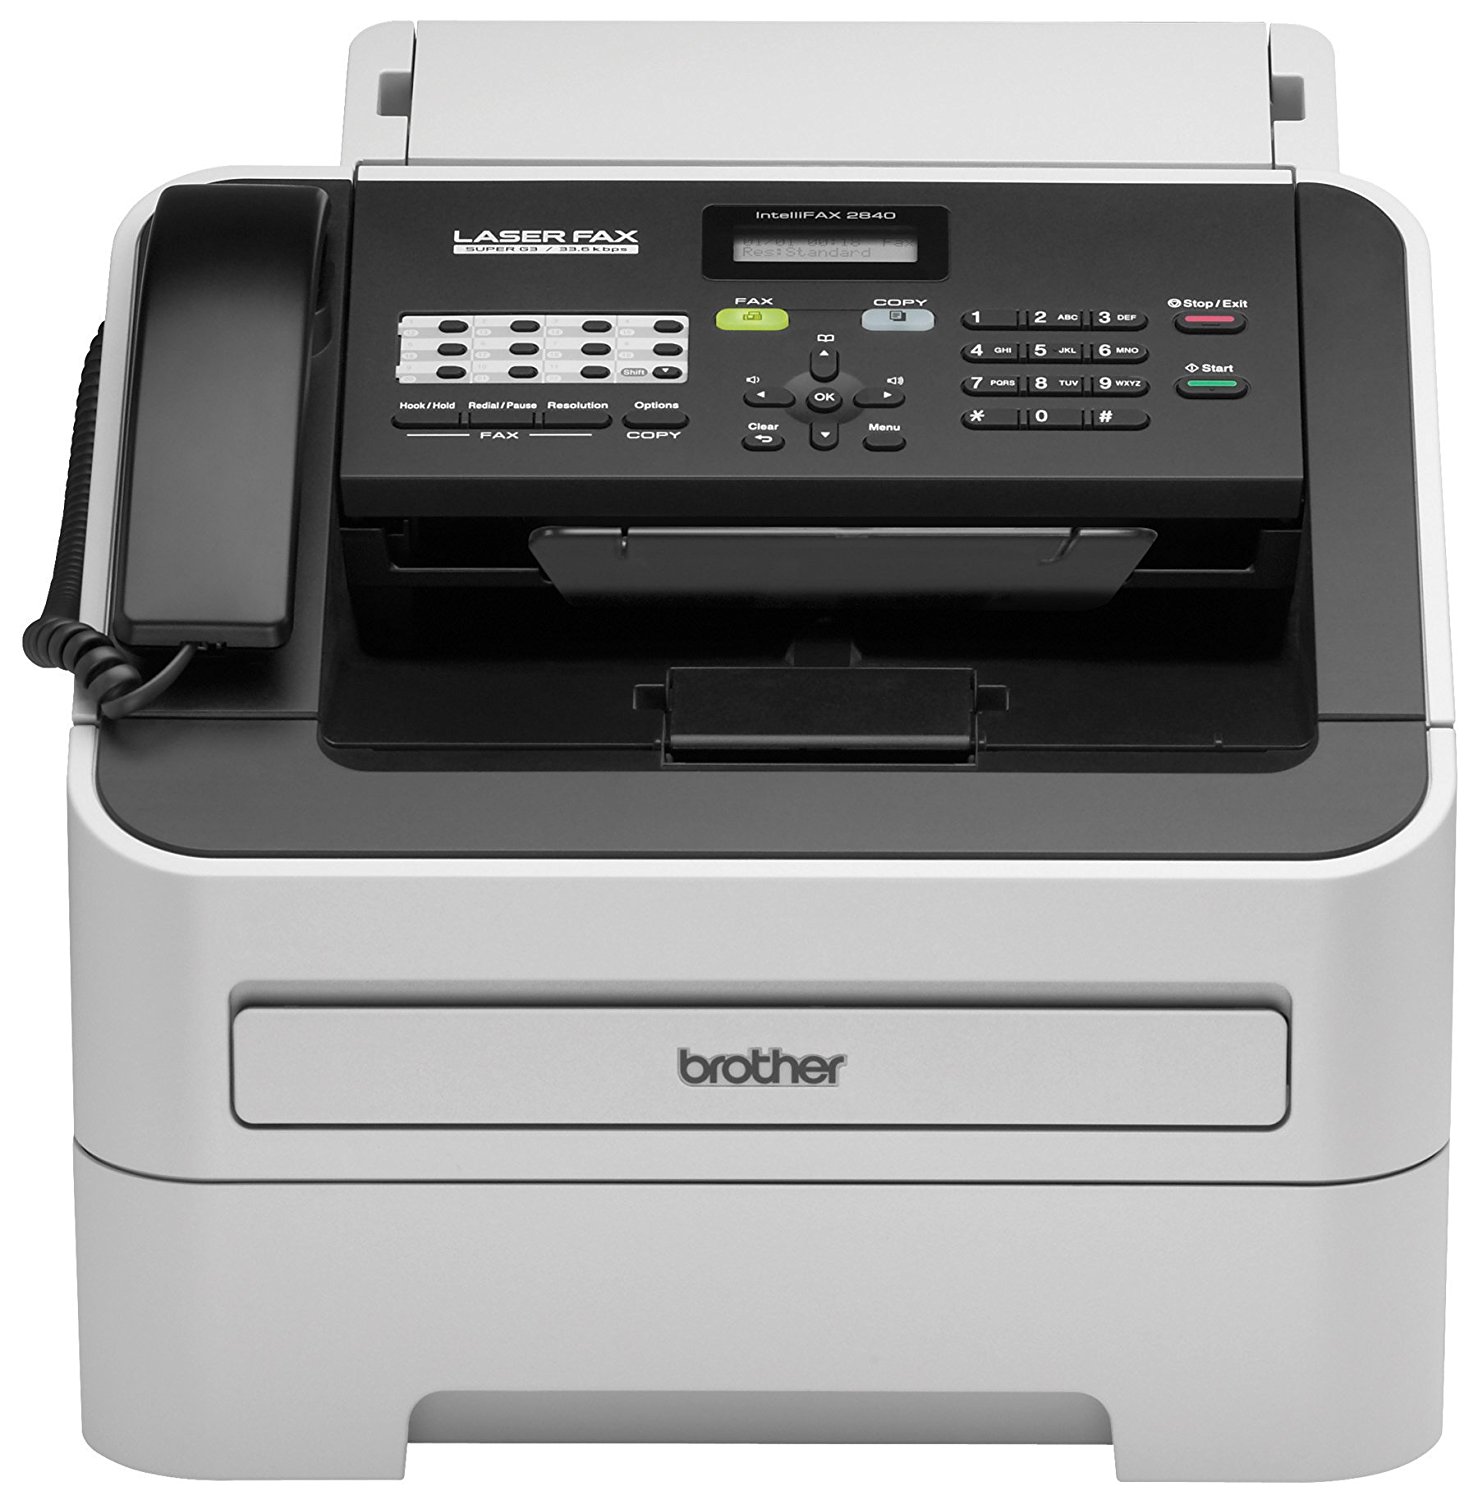 Brother Printer Impressora monocromática sem fio RFAX2840 com scanner e fax (recondicionado certificado)